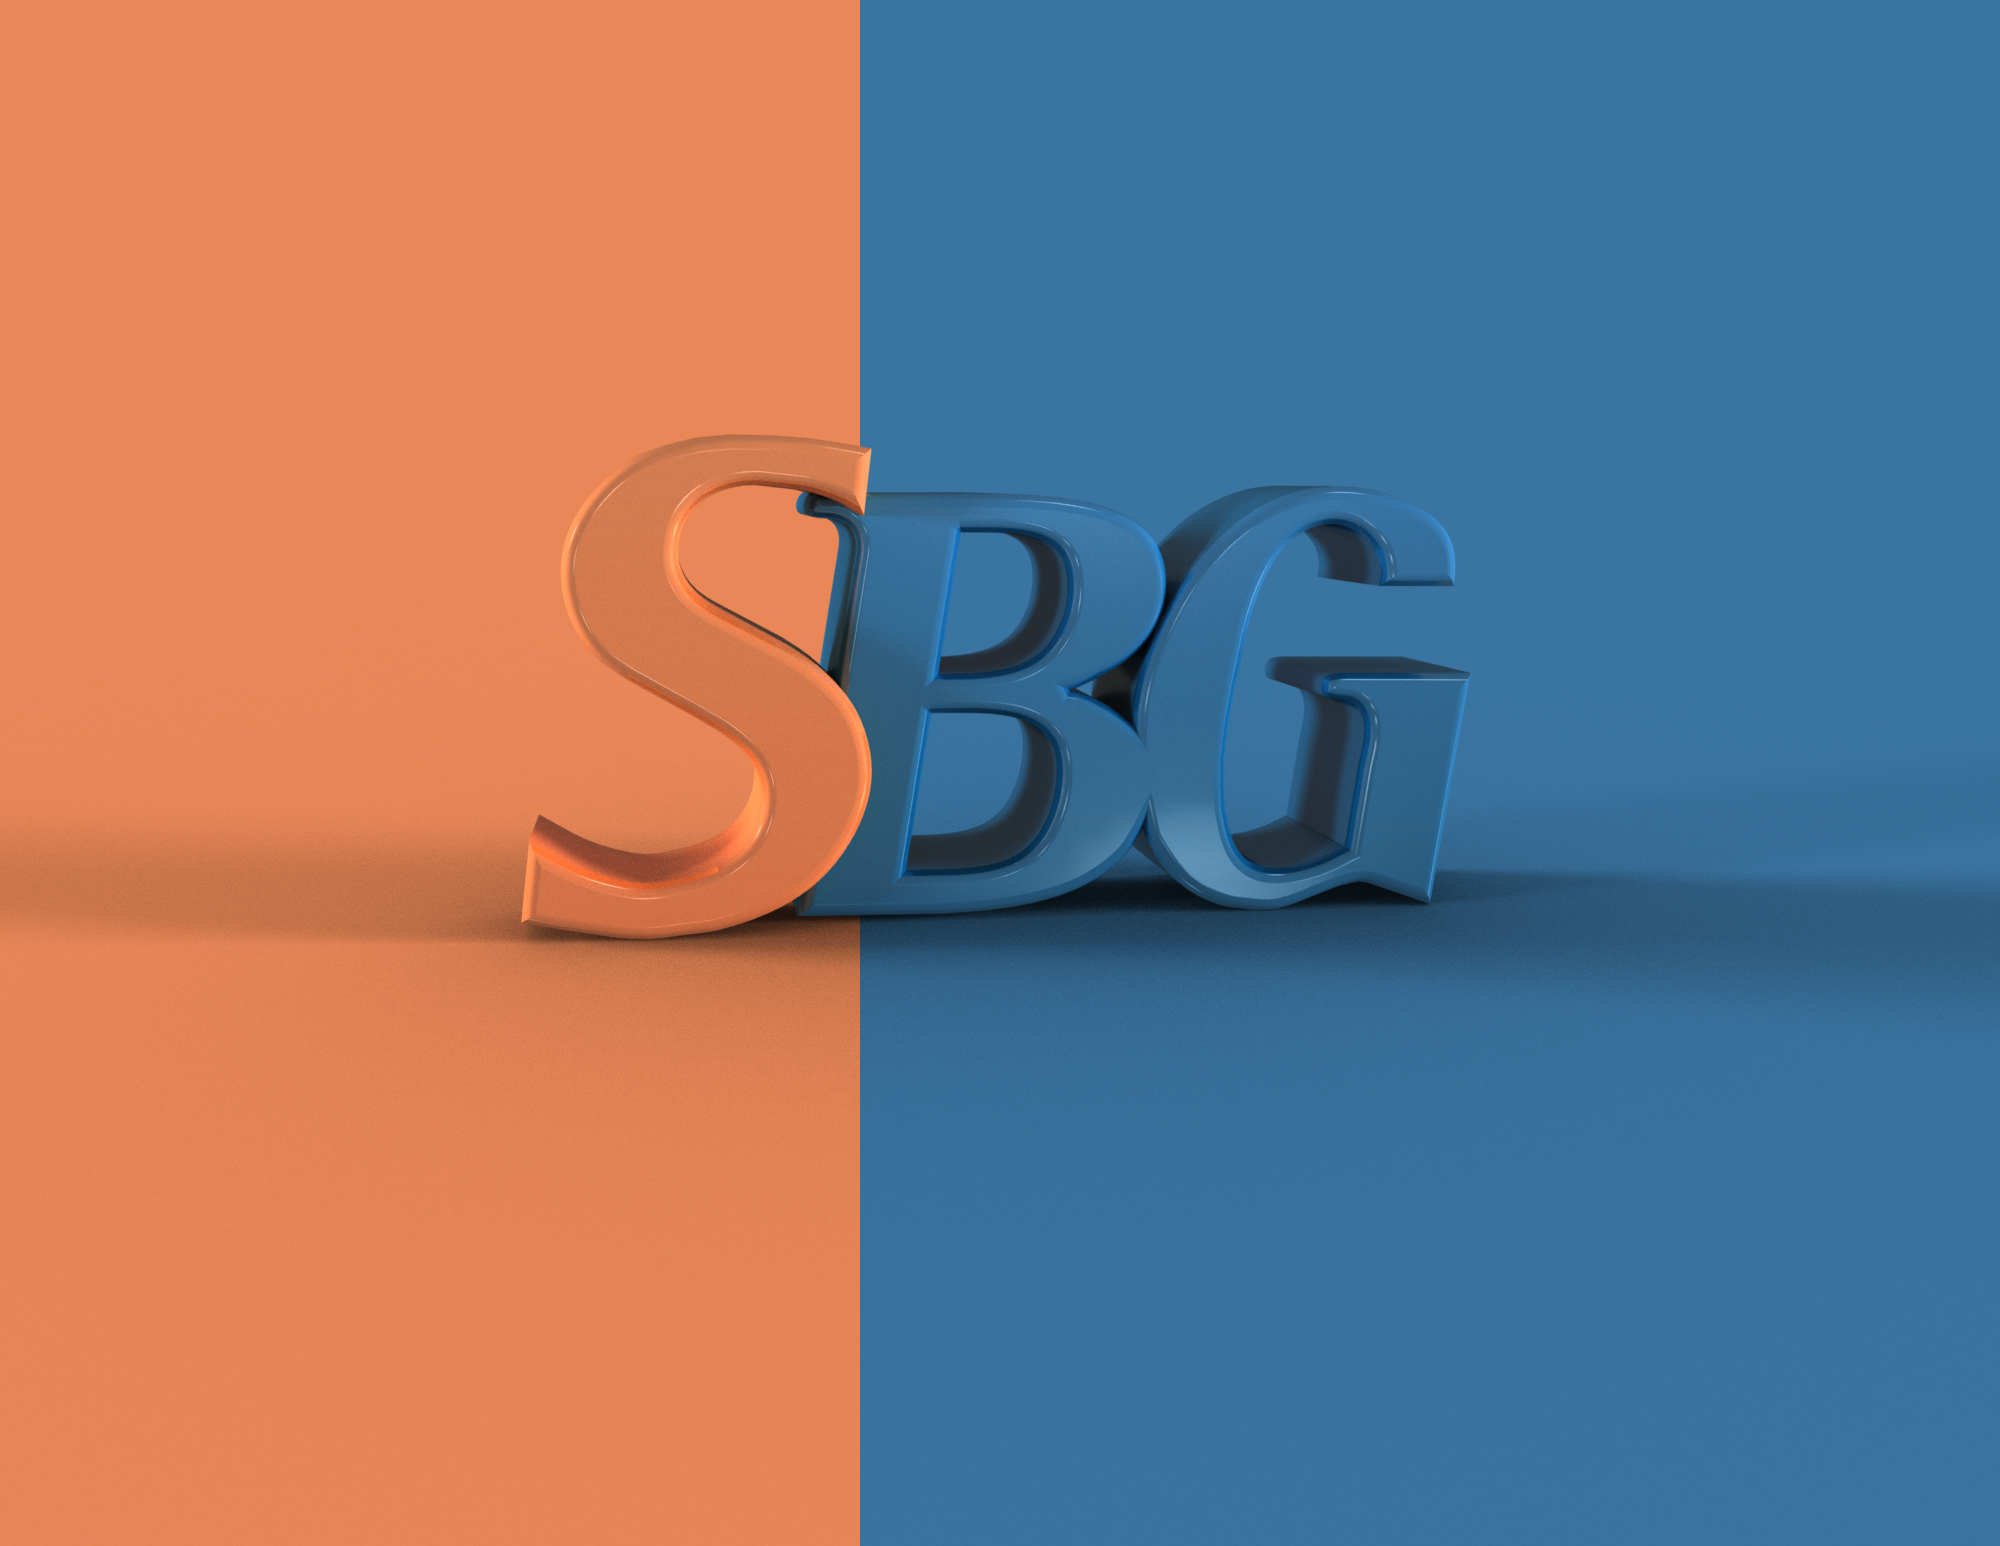 SBG 2015 3d para poster 1.1 orange blue.jpg